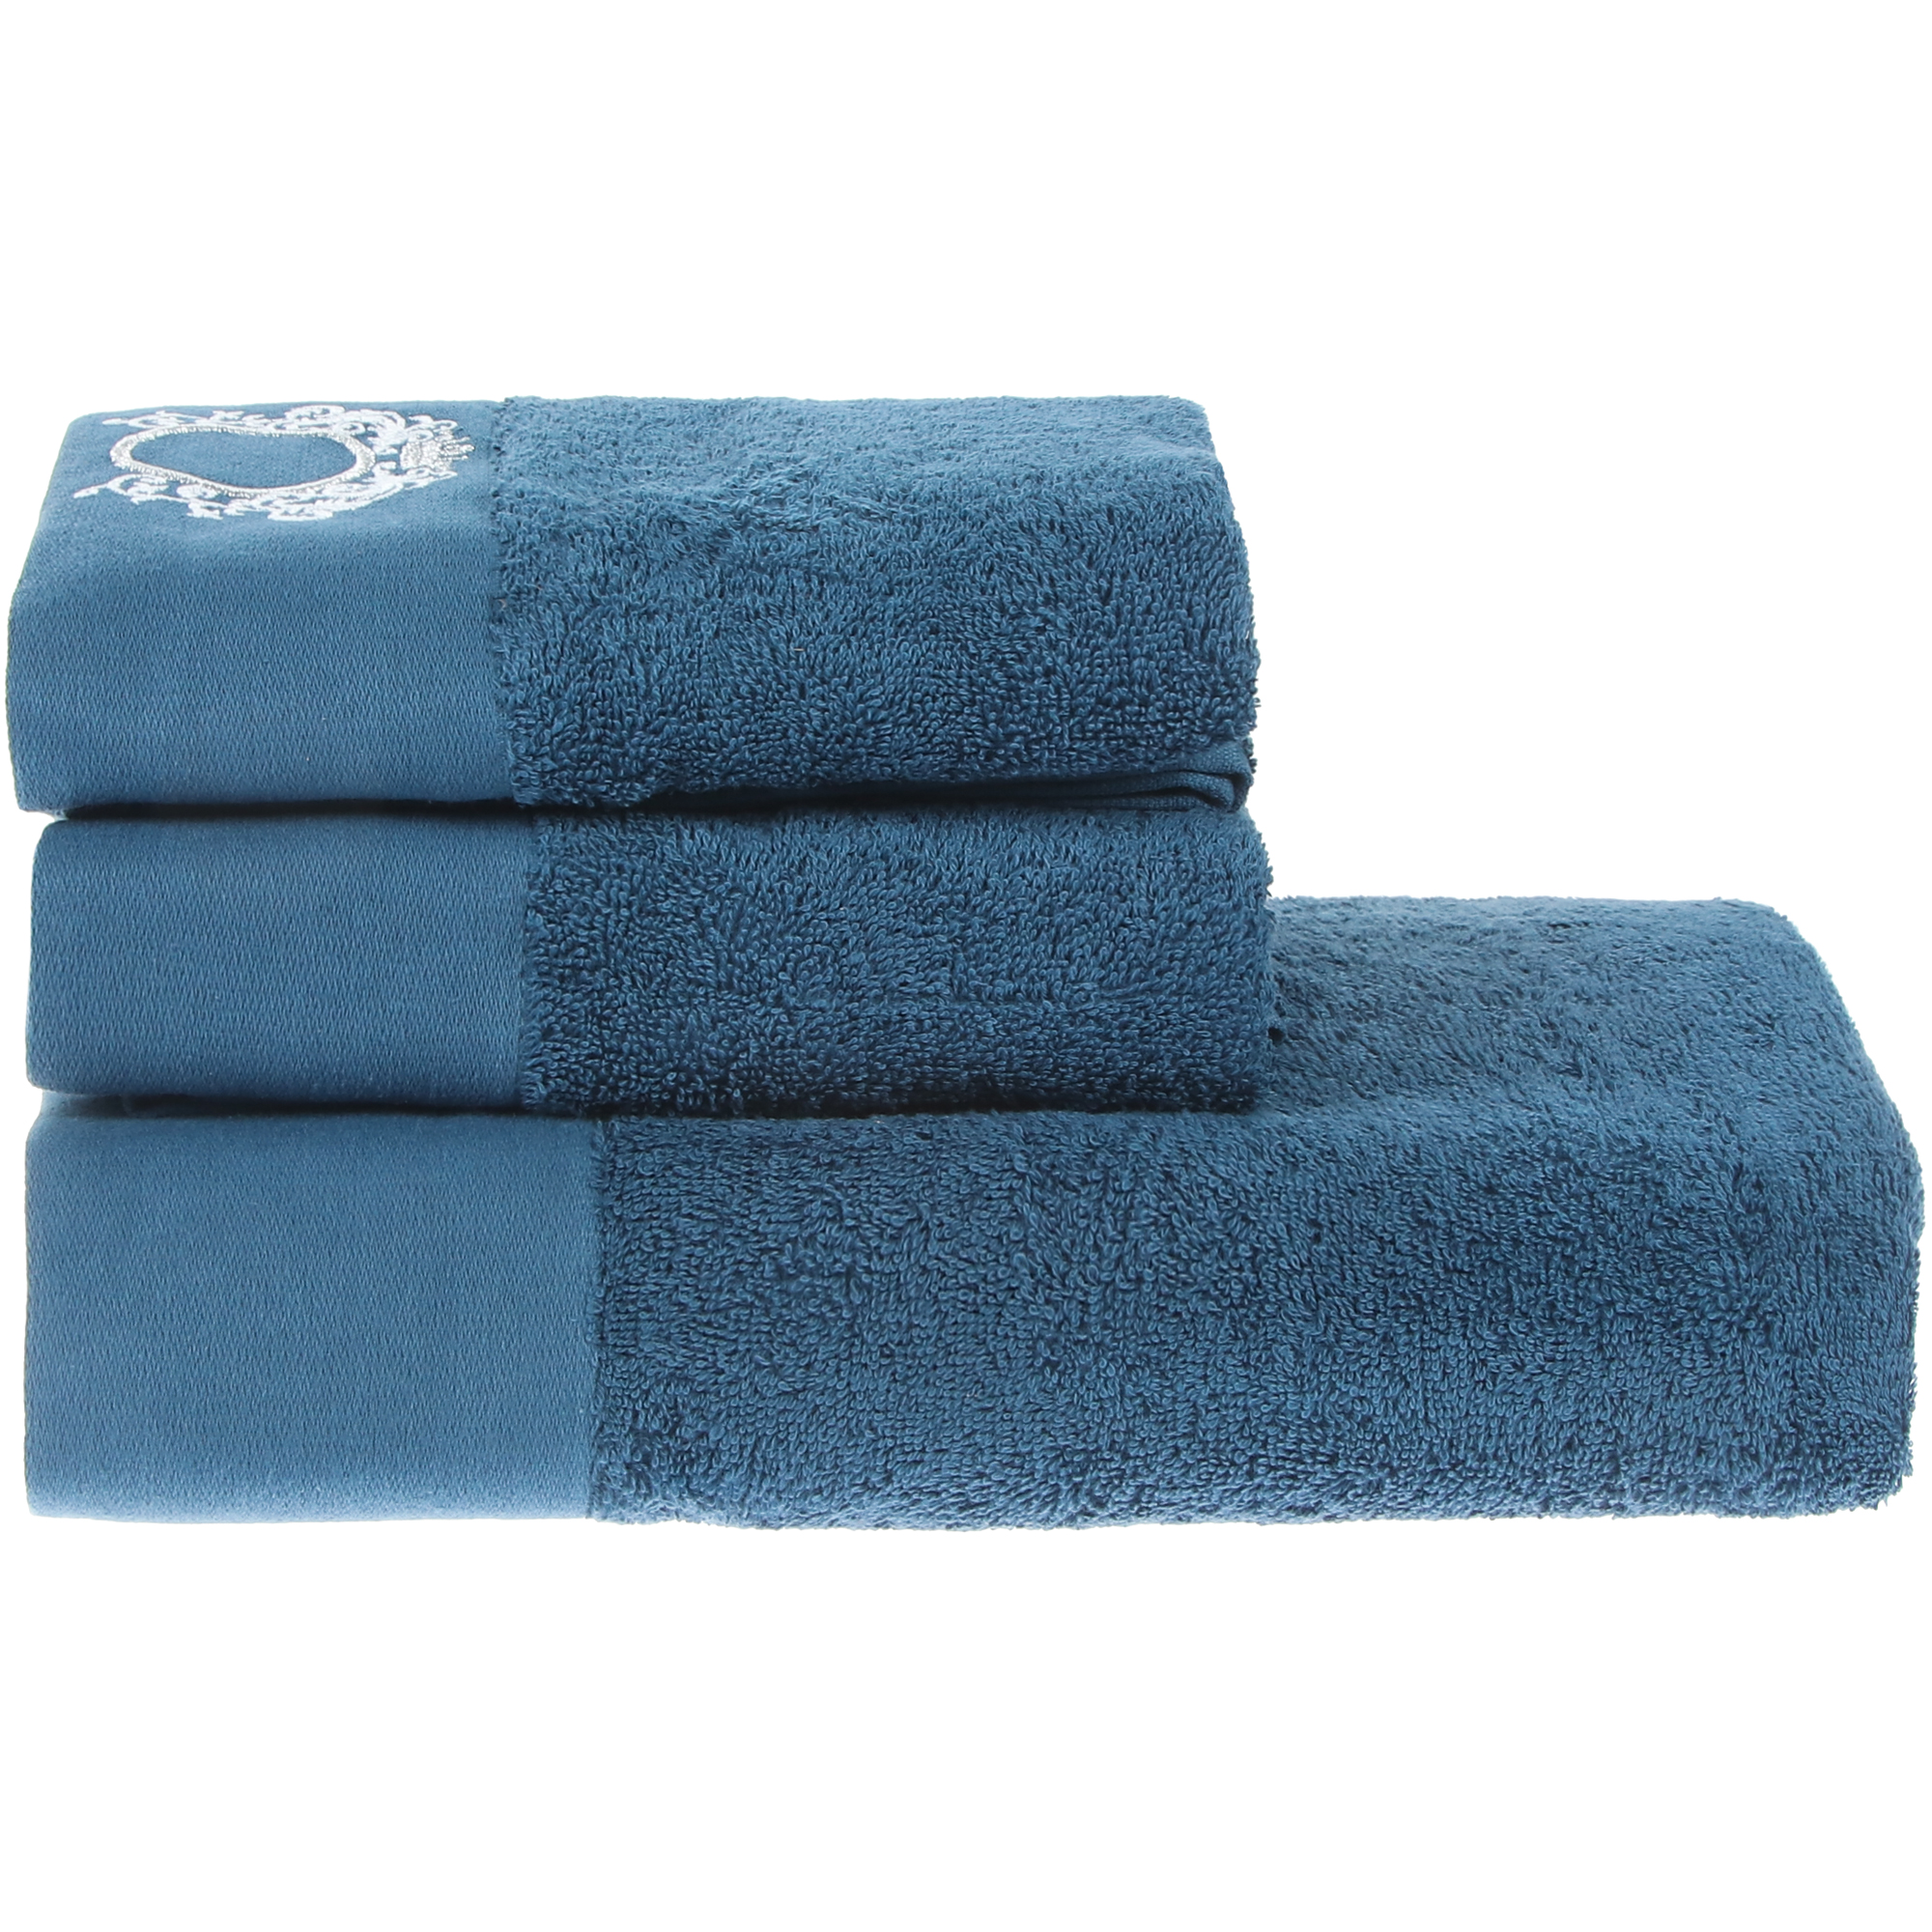 Набор полотенец Asil Royal 2 шт х 45х70 см, 1 шт х 70х140 см махровые синие, цвет синий - фото 4